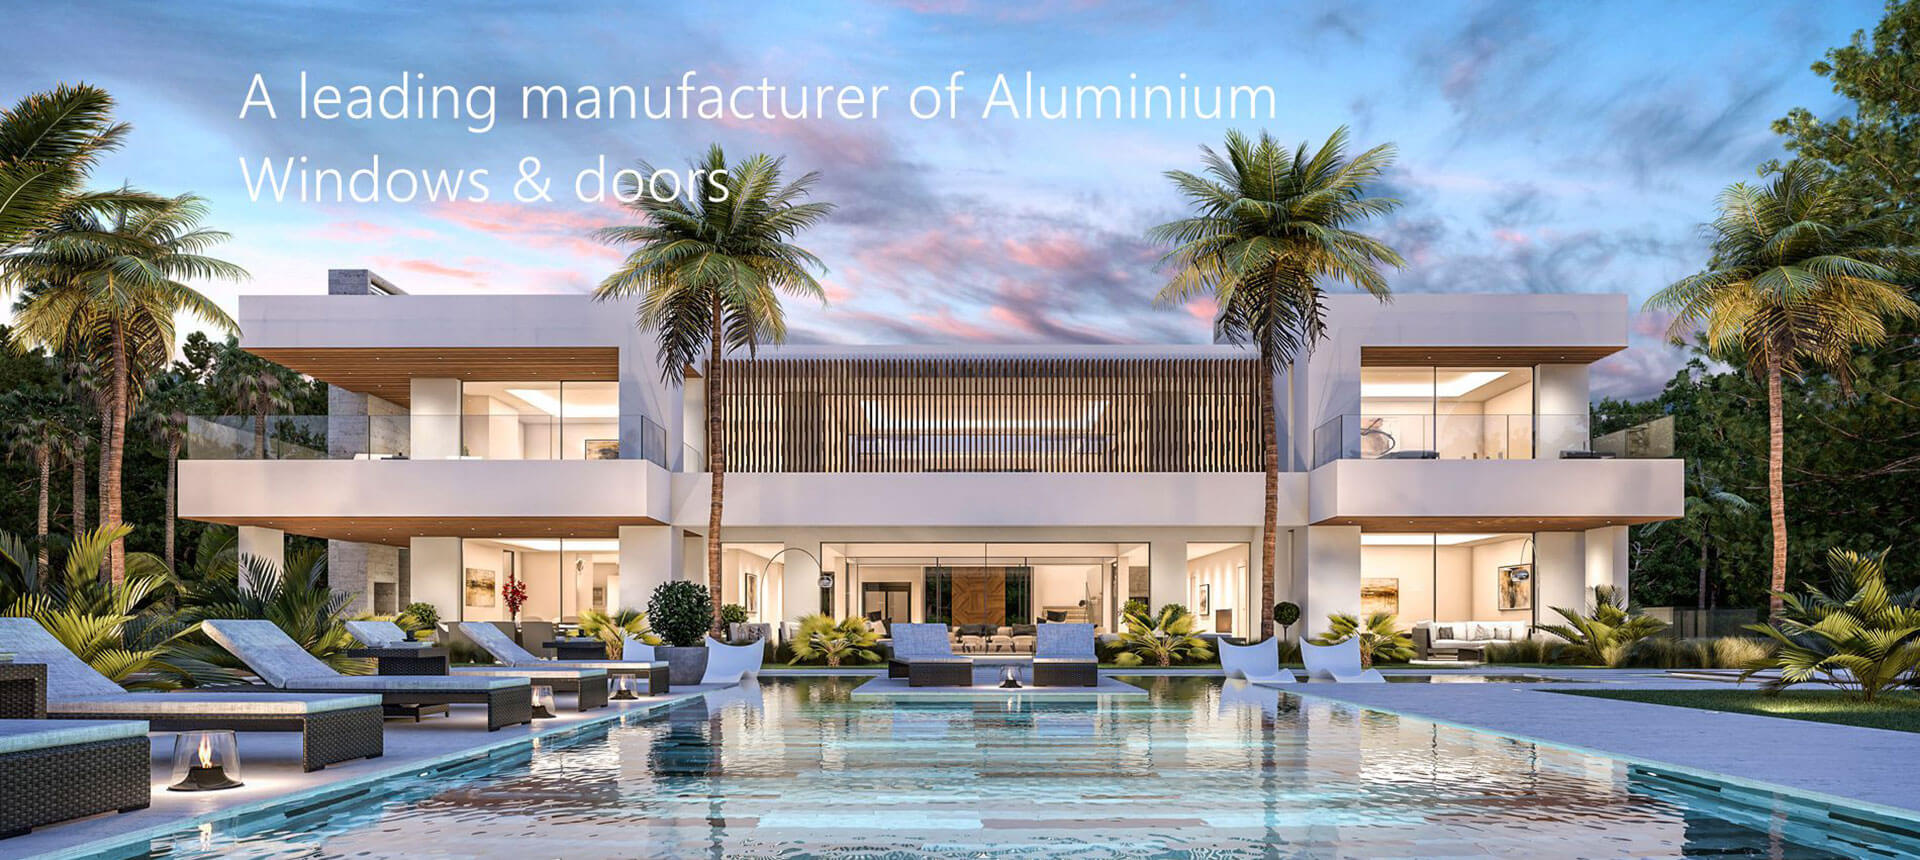 A leading manu facturer of Aluminium Windows & doors